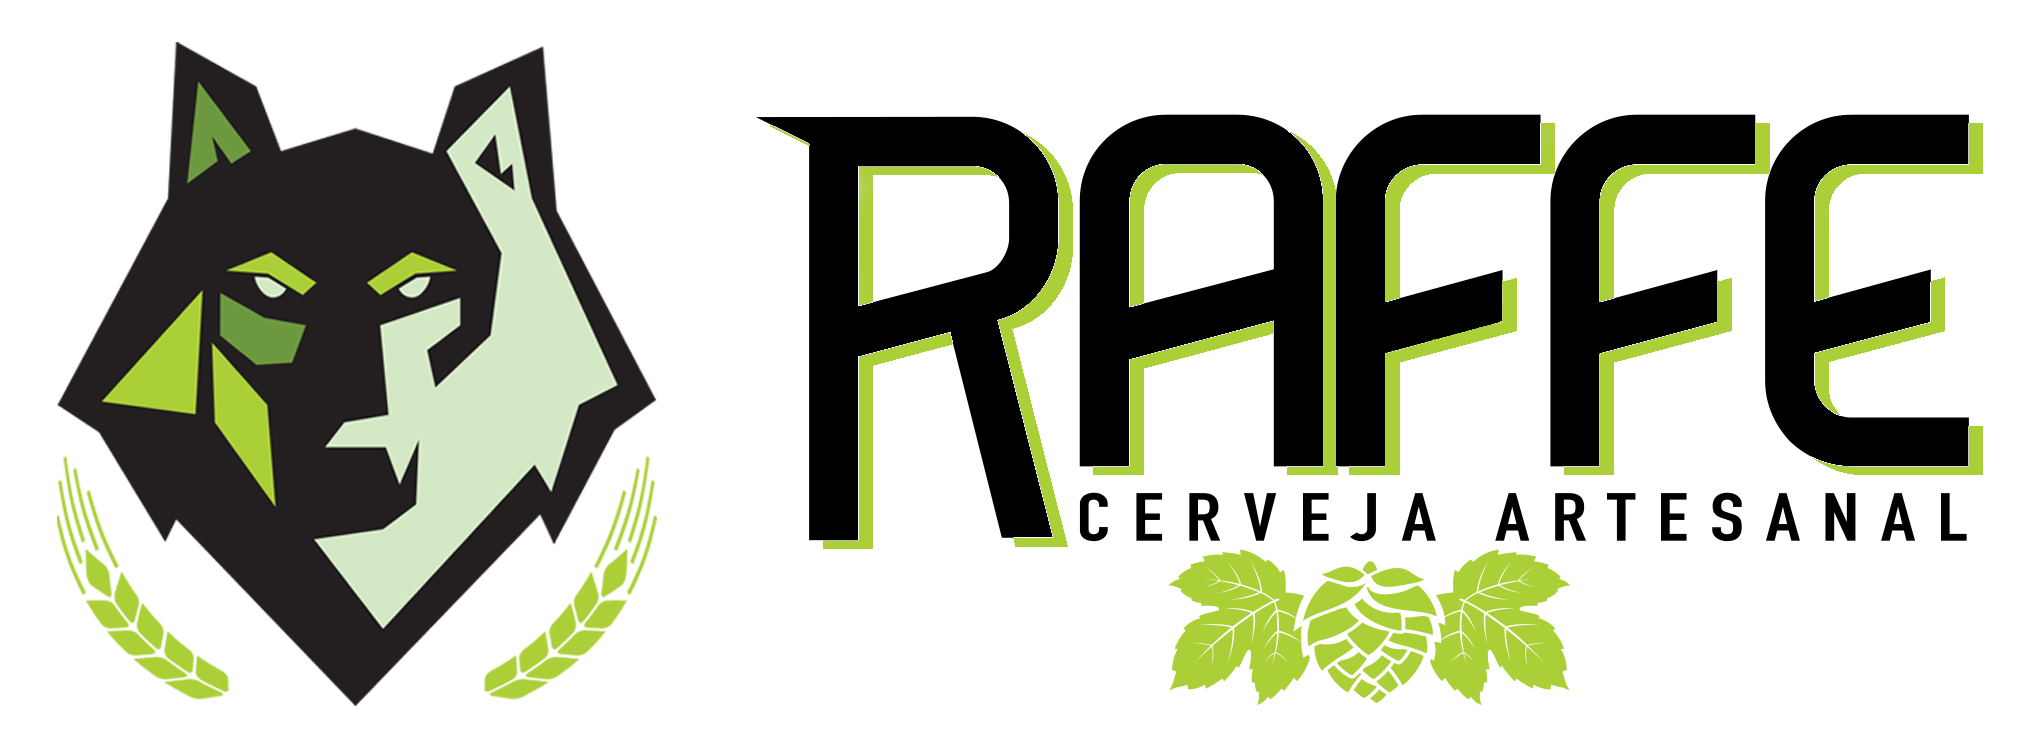 Logo Preta Cervejaria Raffe